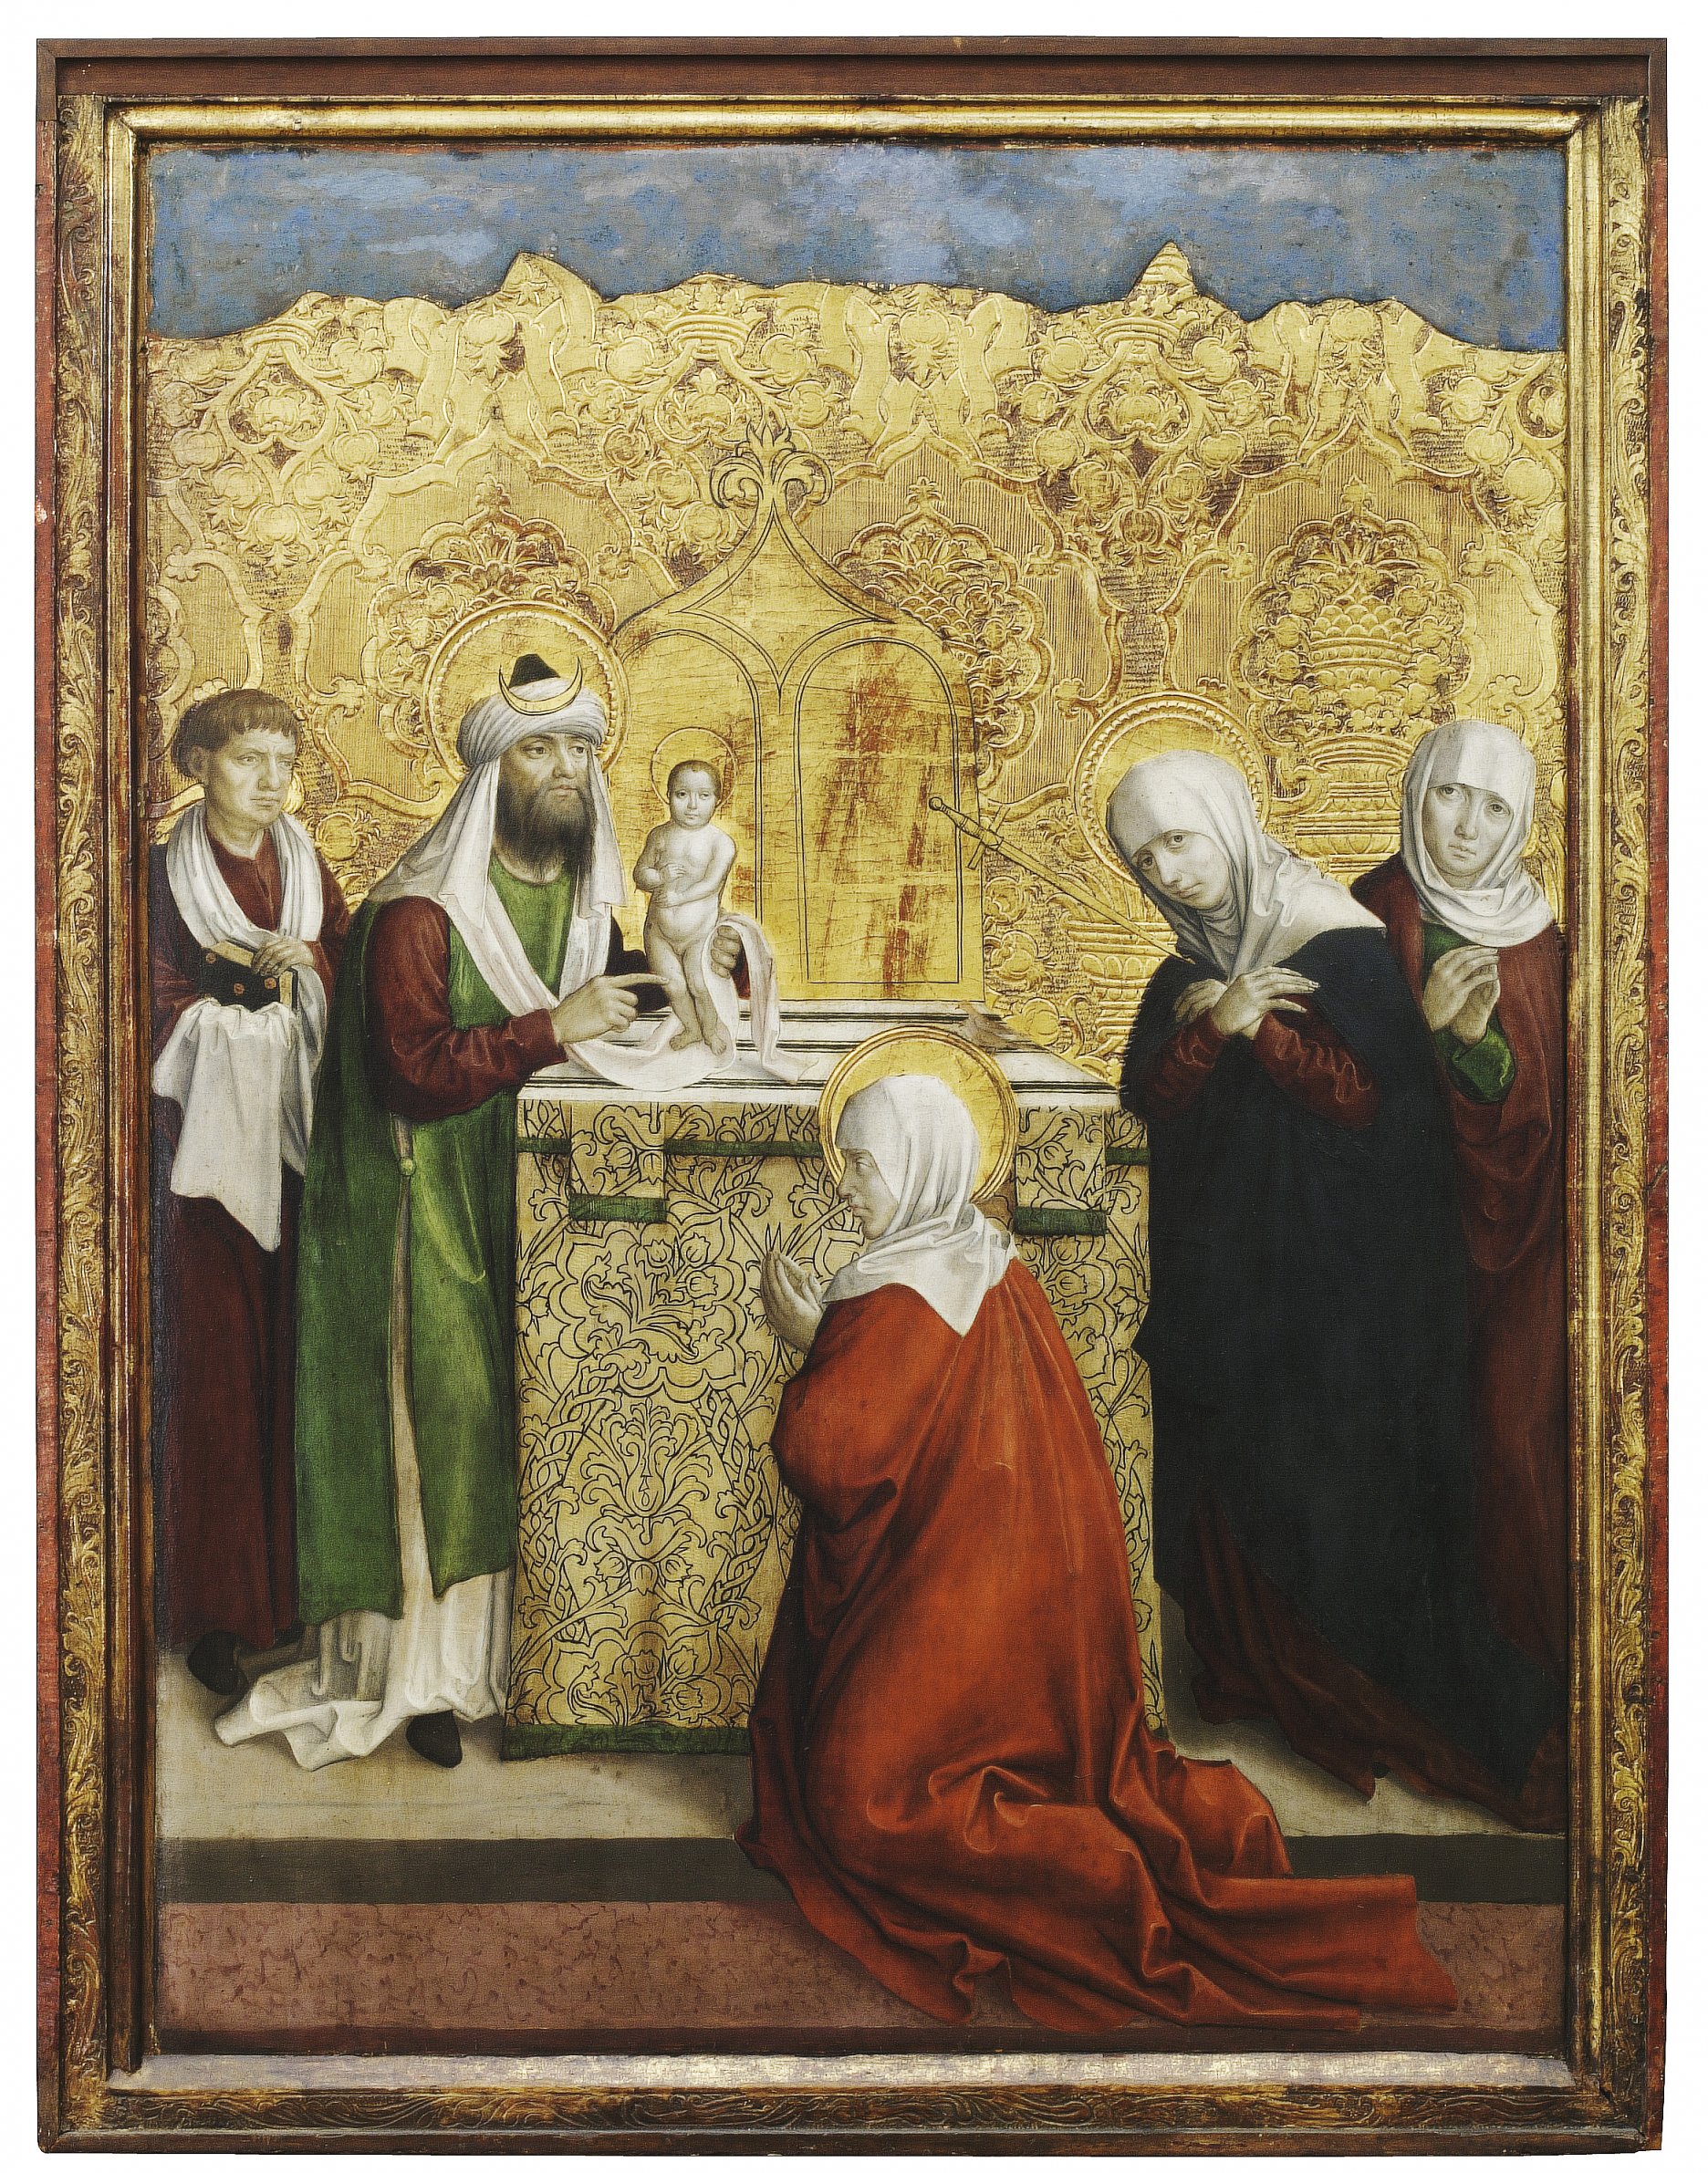 Majster z Okoličného a dielňa: Hlavný oltár Panny Márie v kláštornom kostole v Okoličnom. Predstavenie v chráme. Cca 1500 – 1510. 